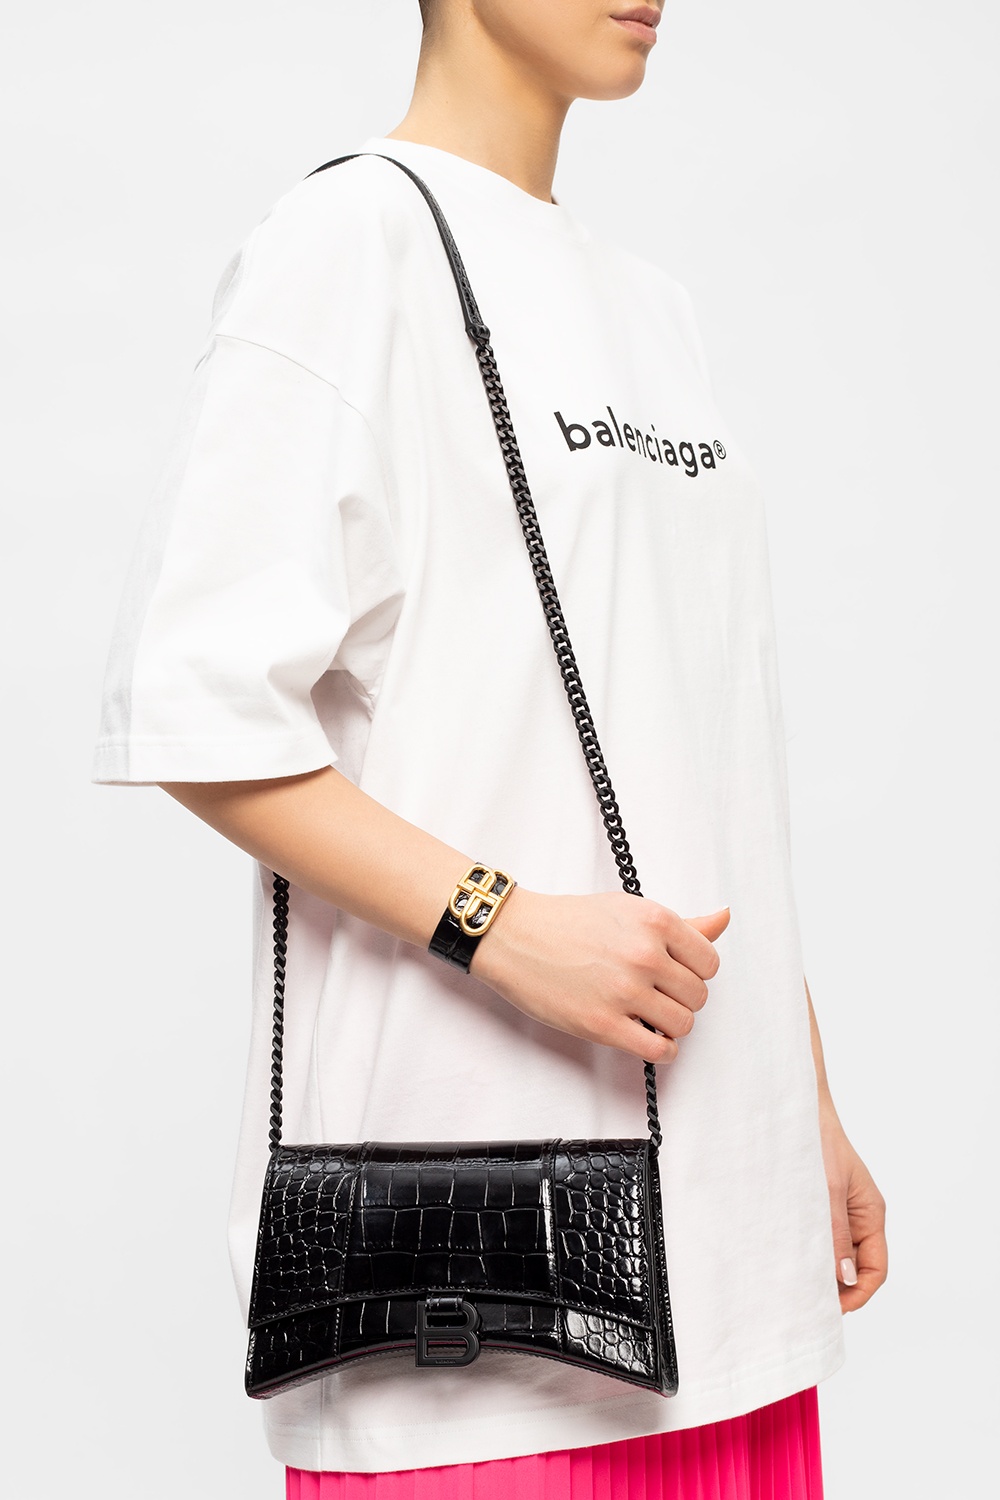 Balenciaga 'Hourglass' shoulder bag, Women's Bags